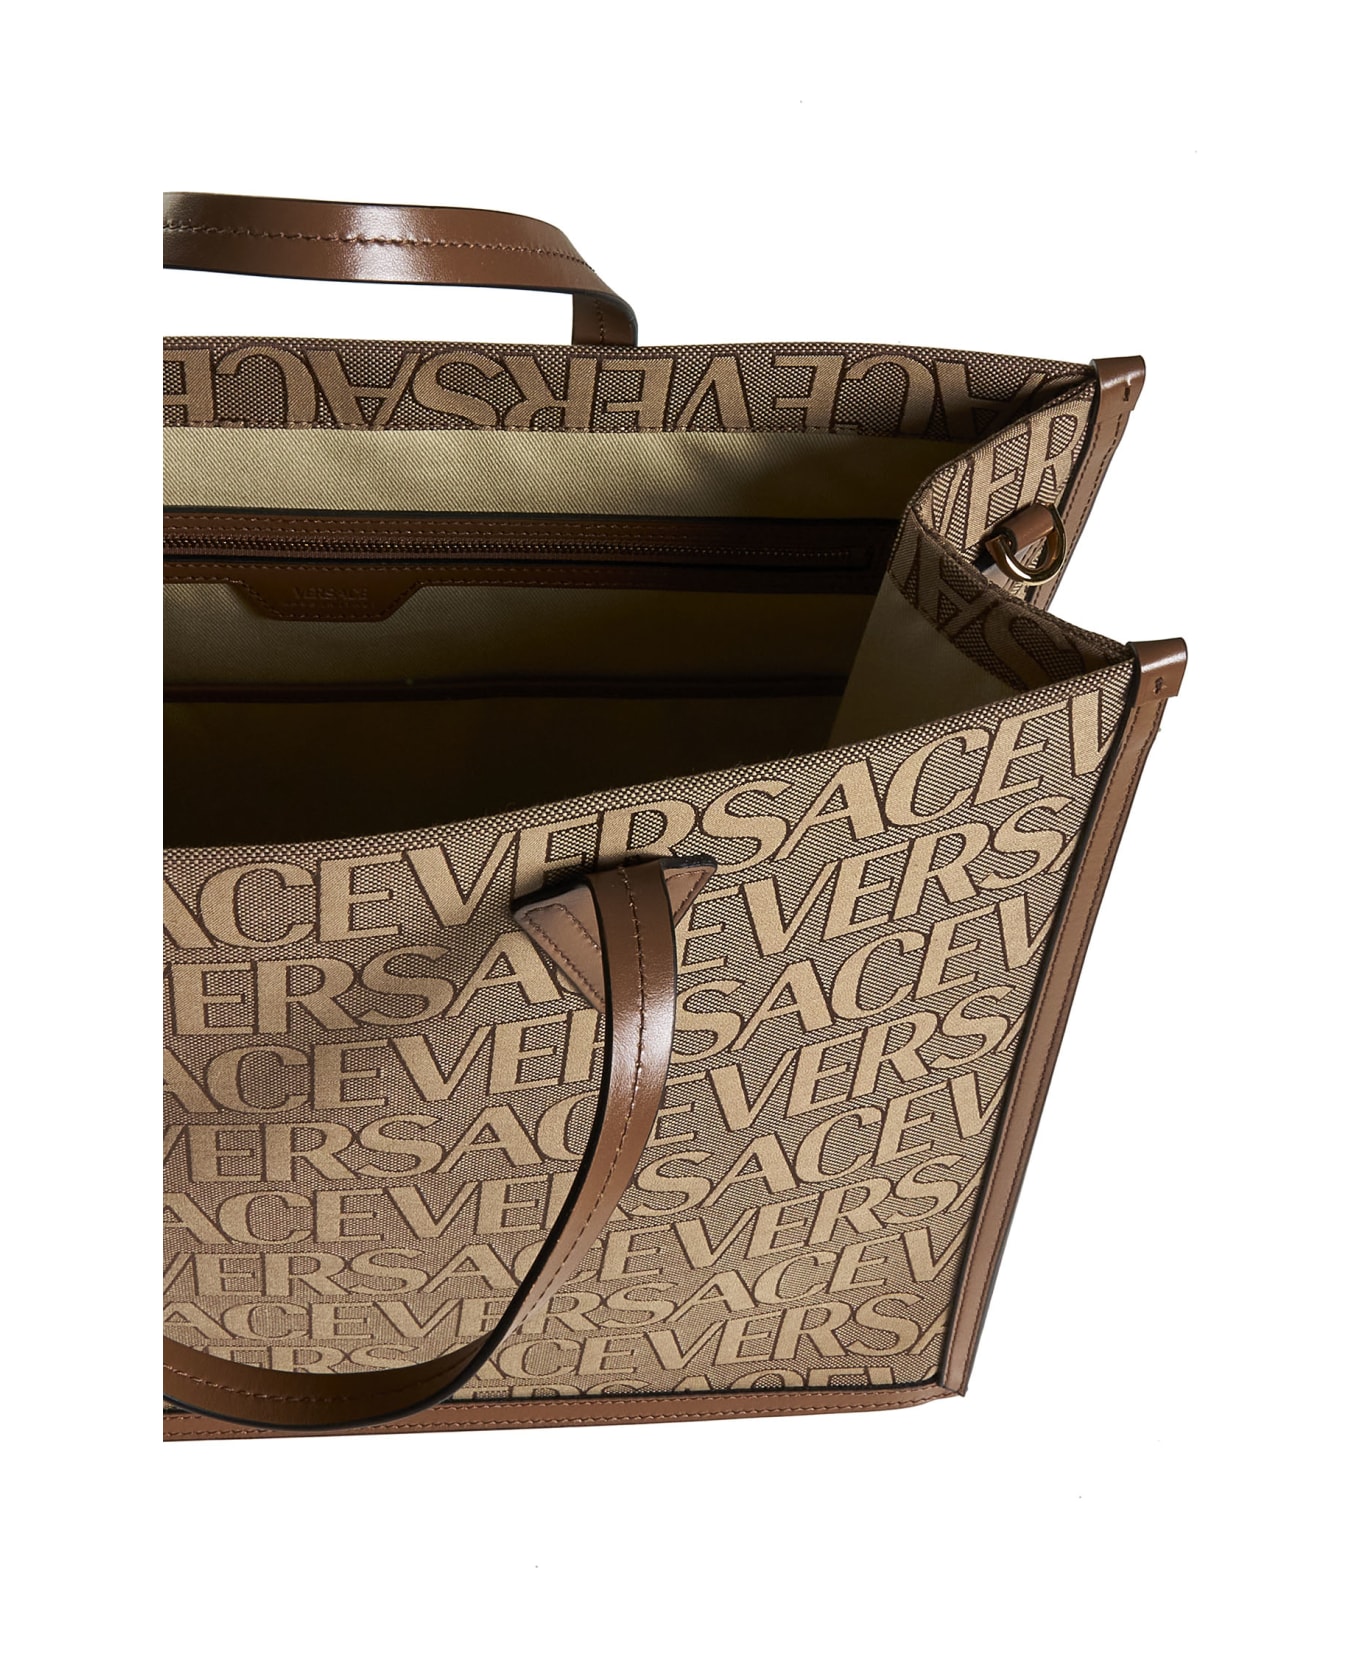 Versace 'versace Allover' Shopper Bag - Brown